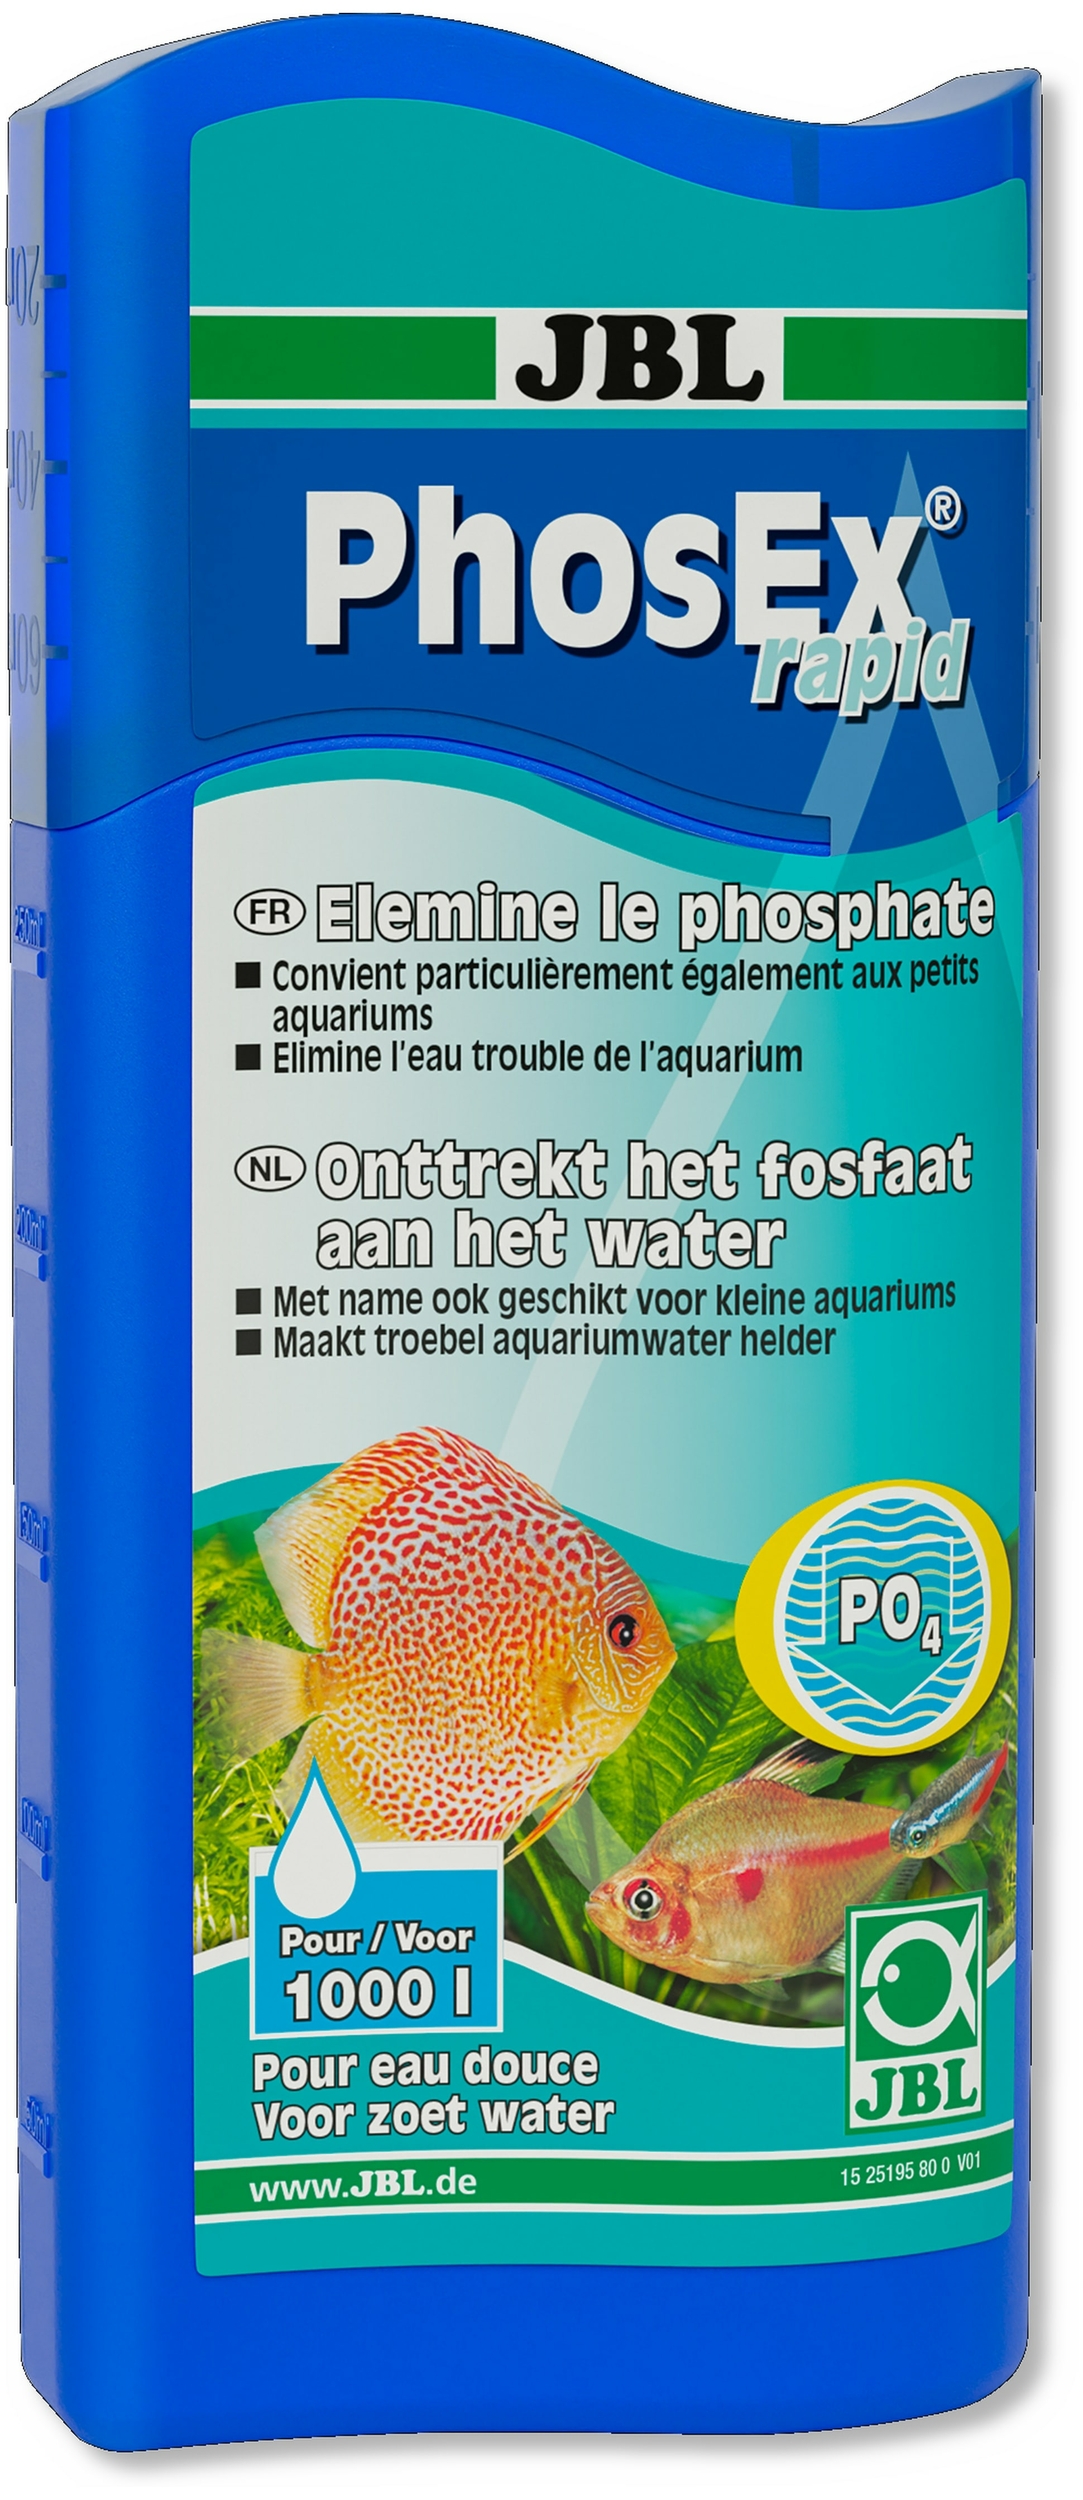 JBL PhosEx Rapid 250 ml élimine en quelques heures les phosphates et stop la prolifération des algues